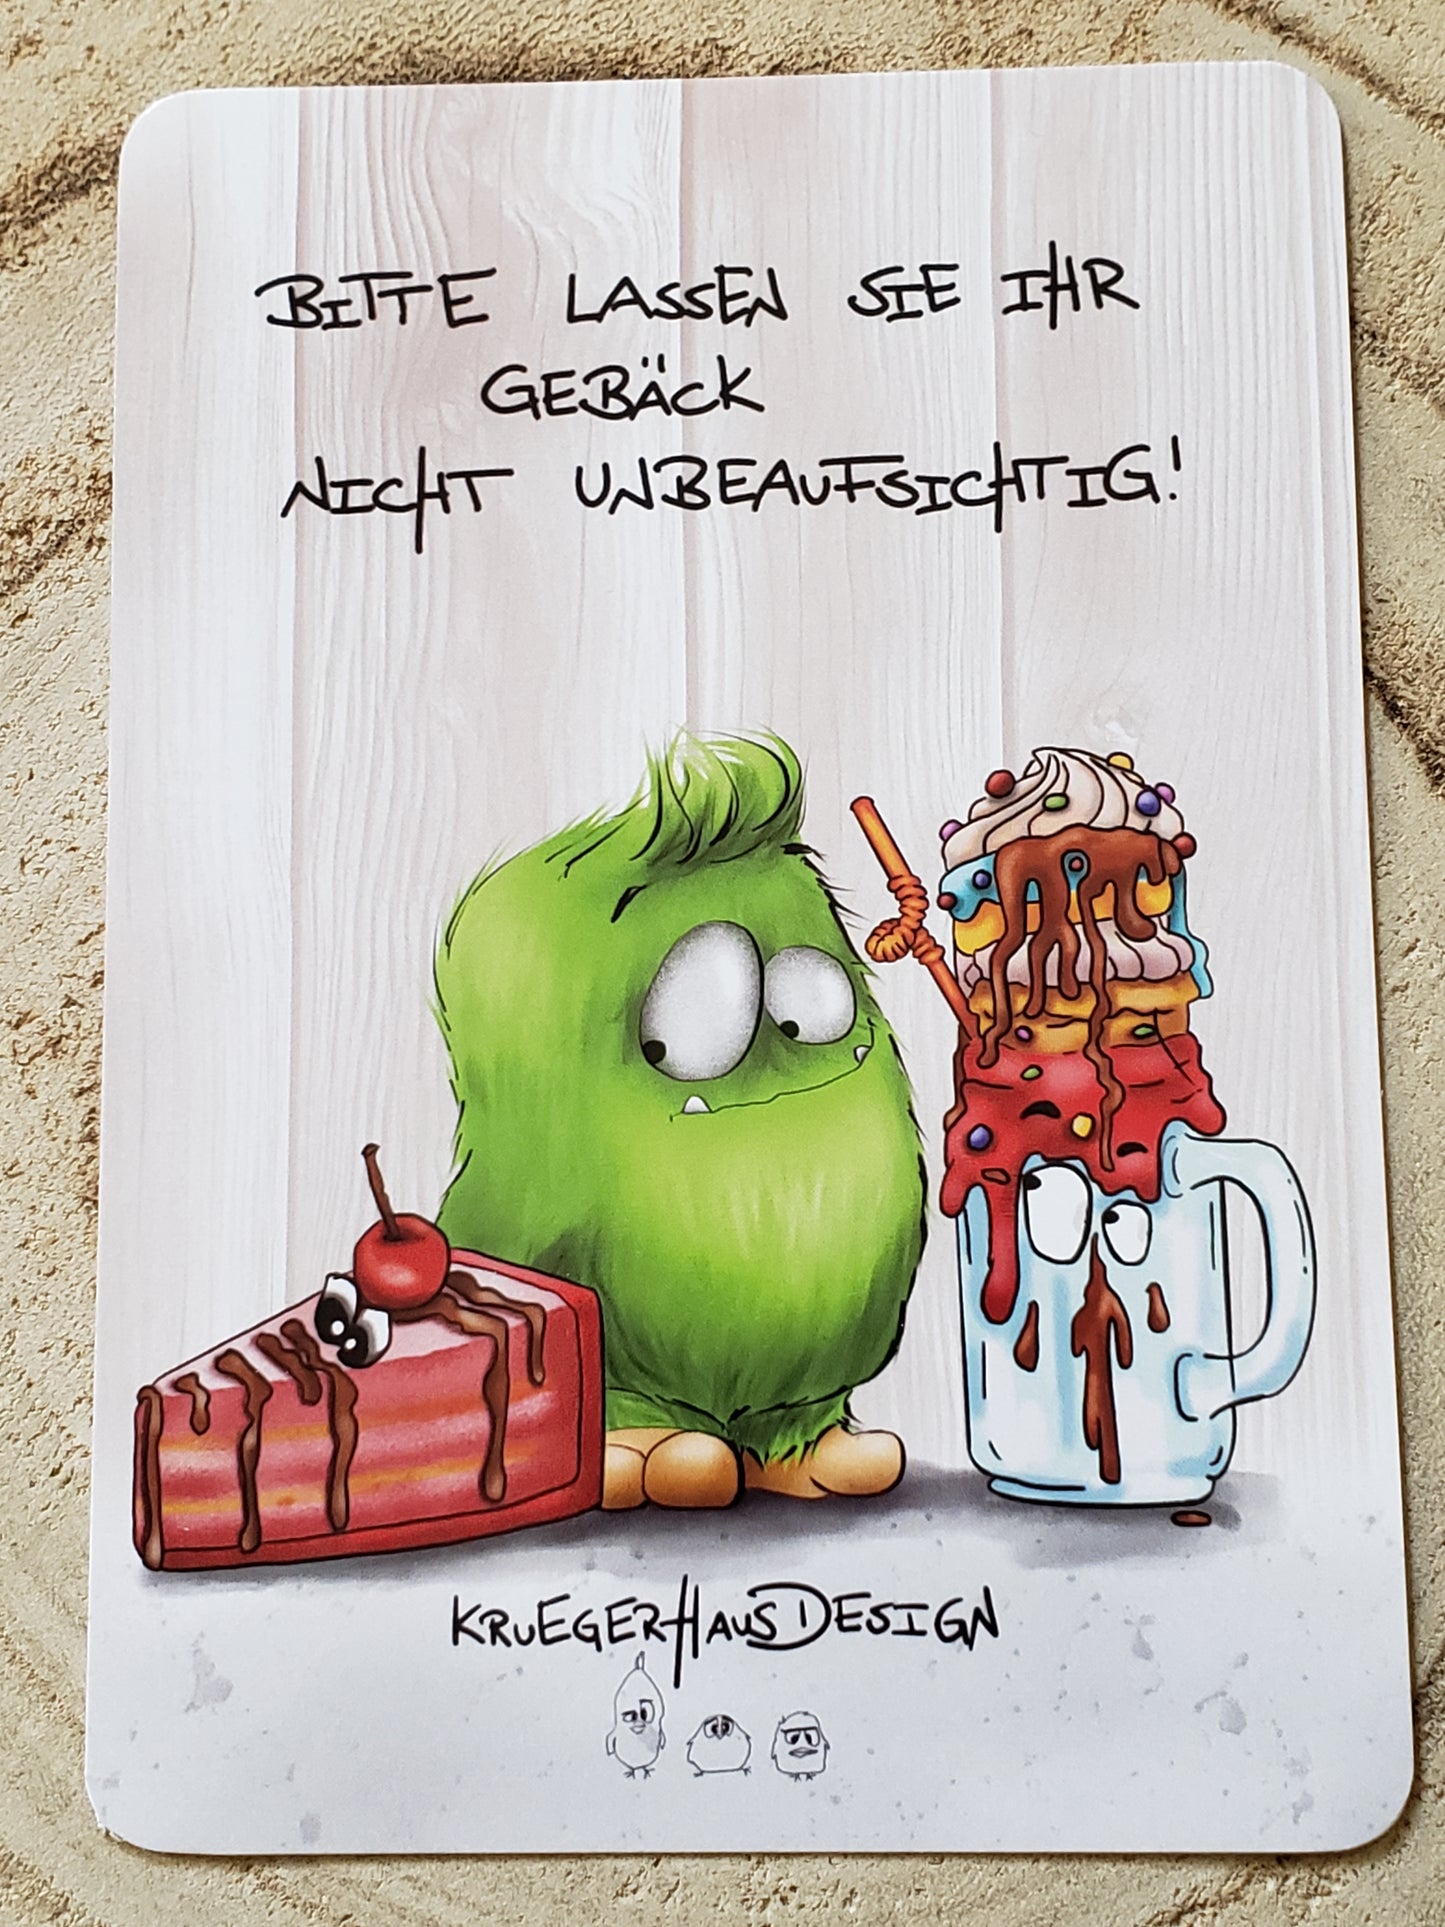 Postkarte Kruegerhausdesign Monster mit Spruch, Bitte lassen Sie Ihr Gebäck nicht unbeaufsichtigt!